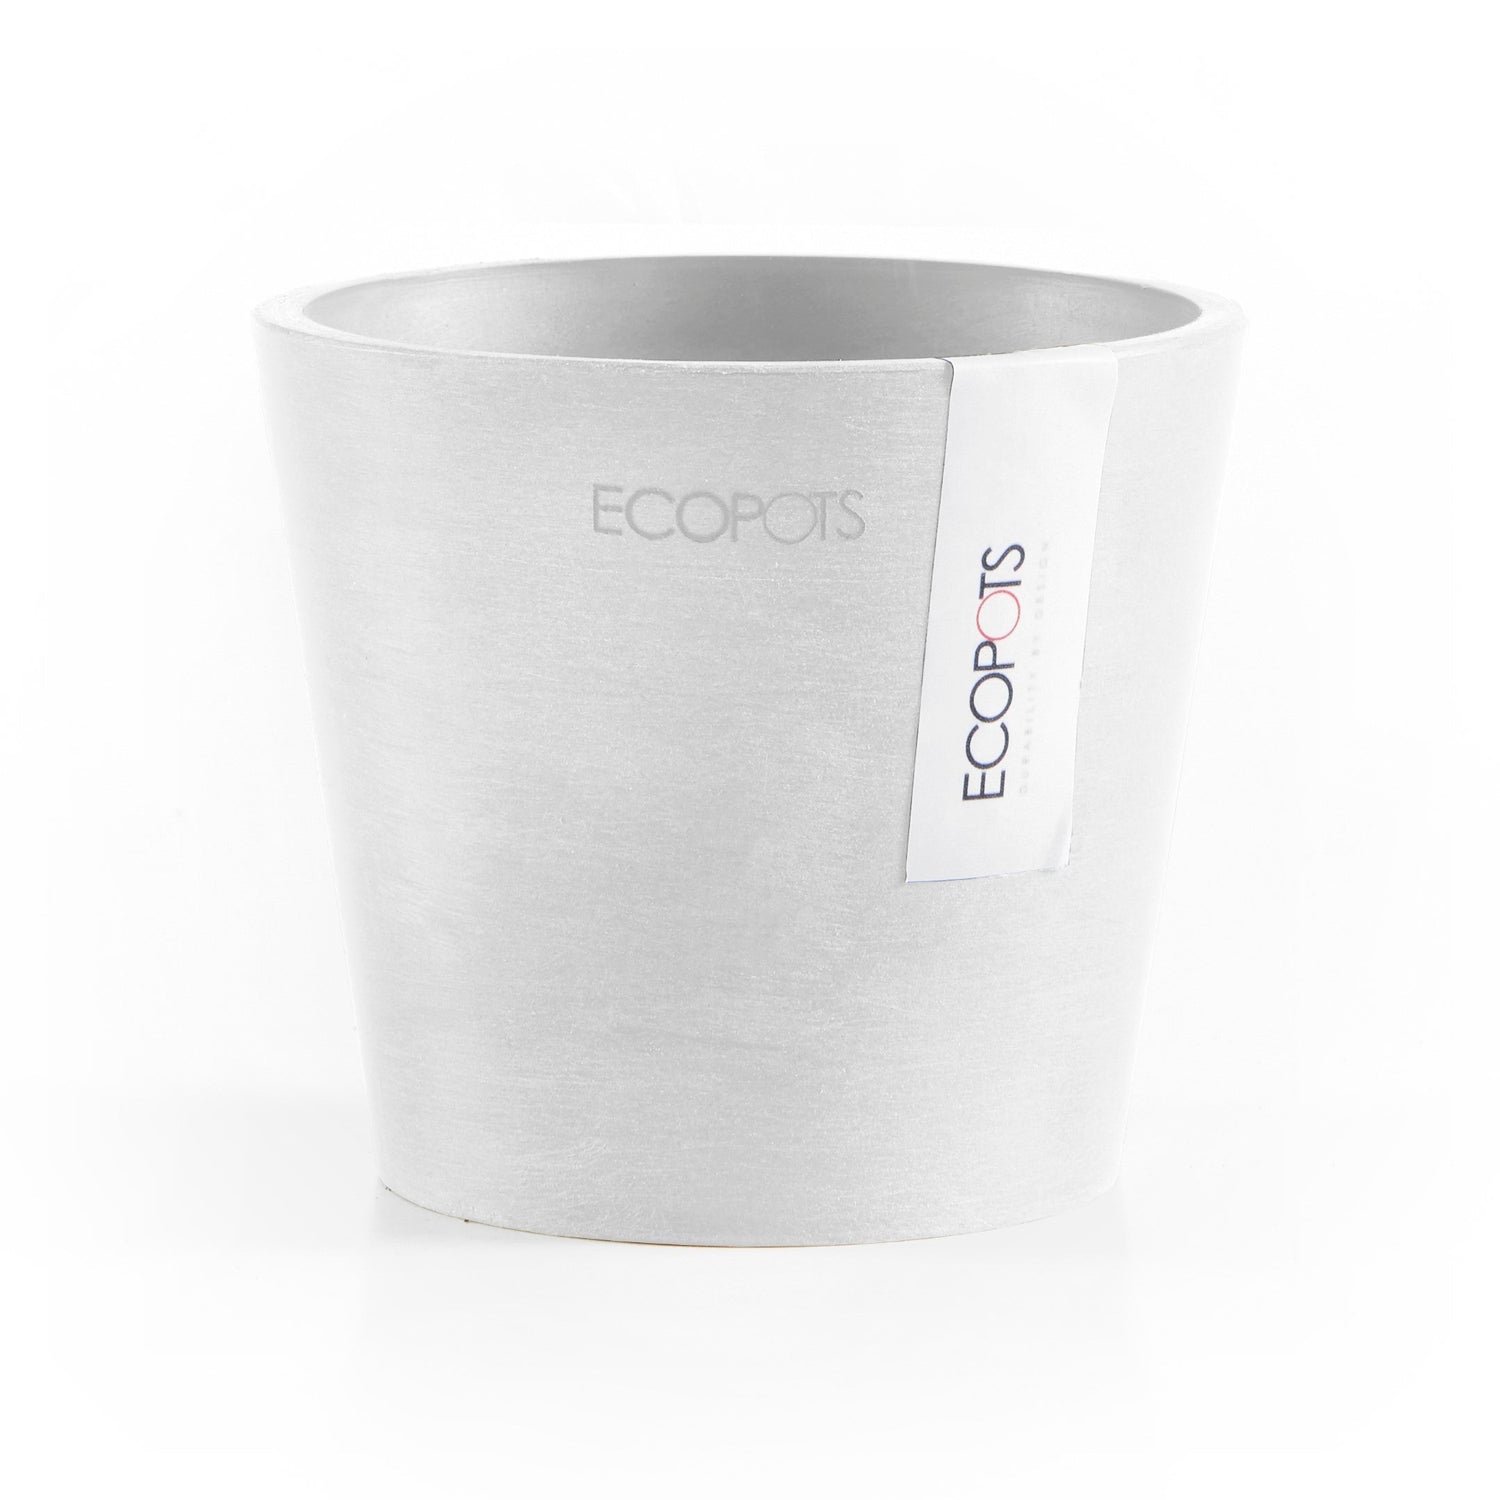 Kukkaruukku - Ecopots - Amsterdam 10,5cm valkoinen - Ecopotskauppa - Uuden aikakauden kukkaruukku